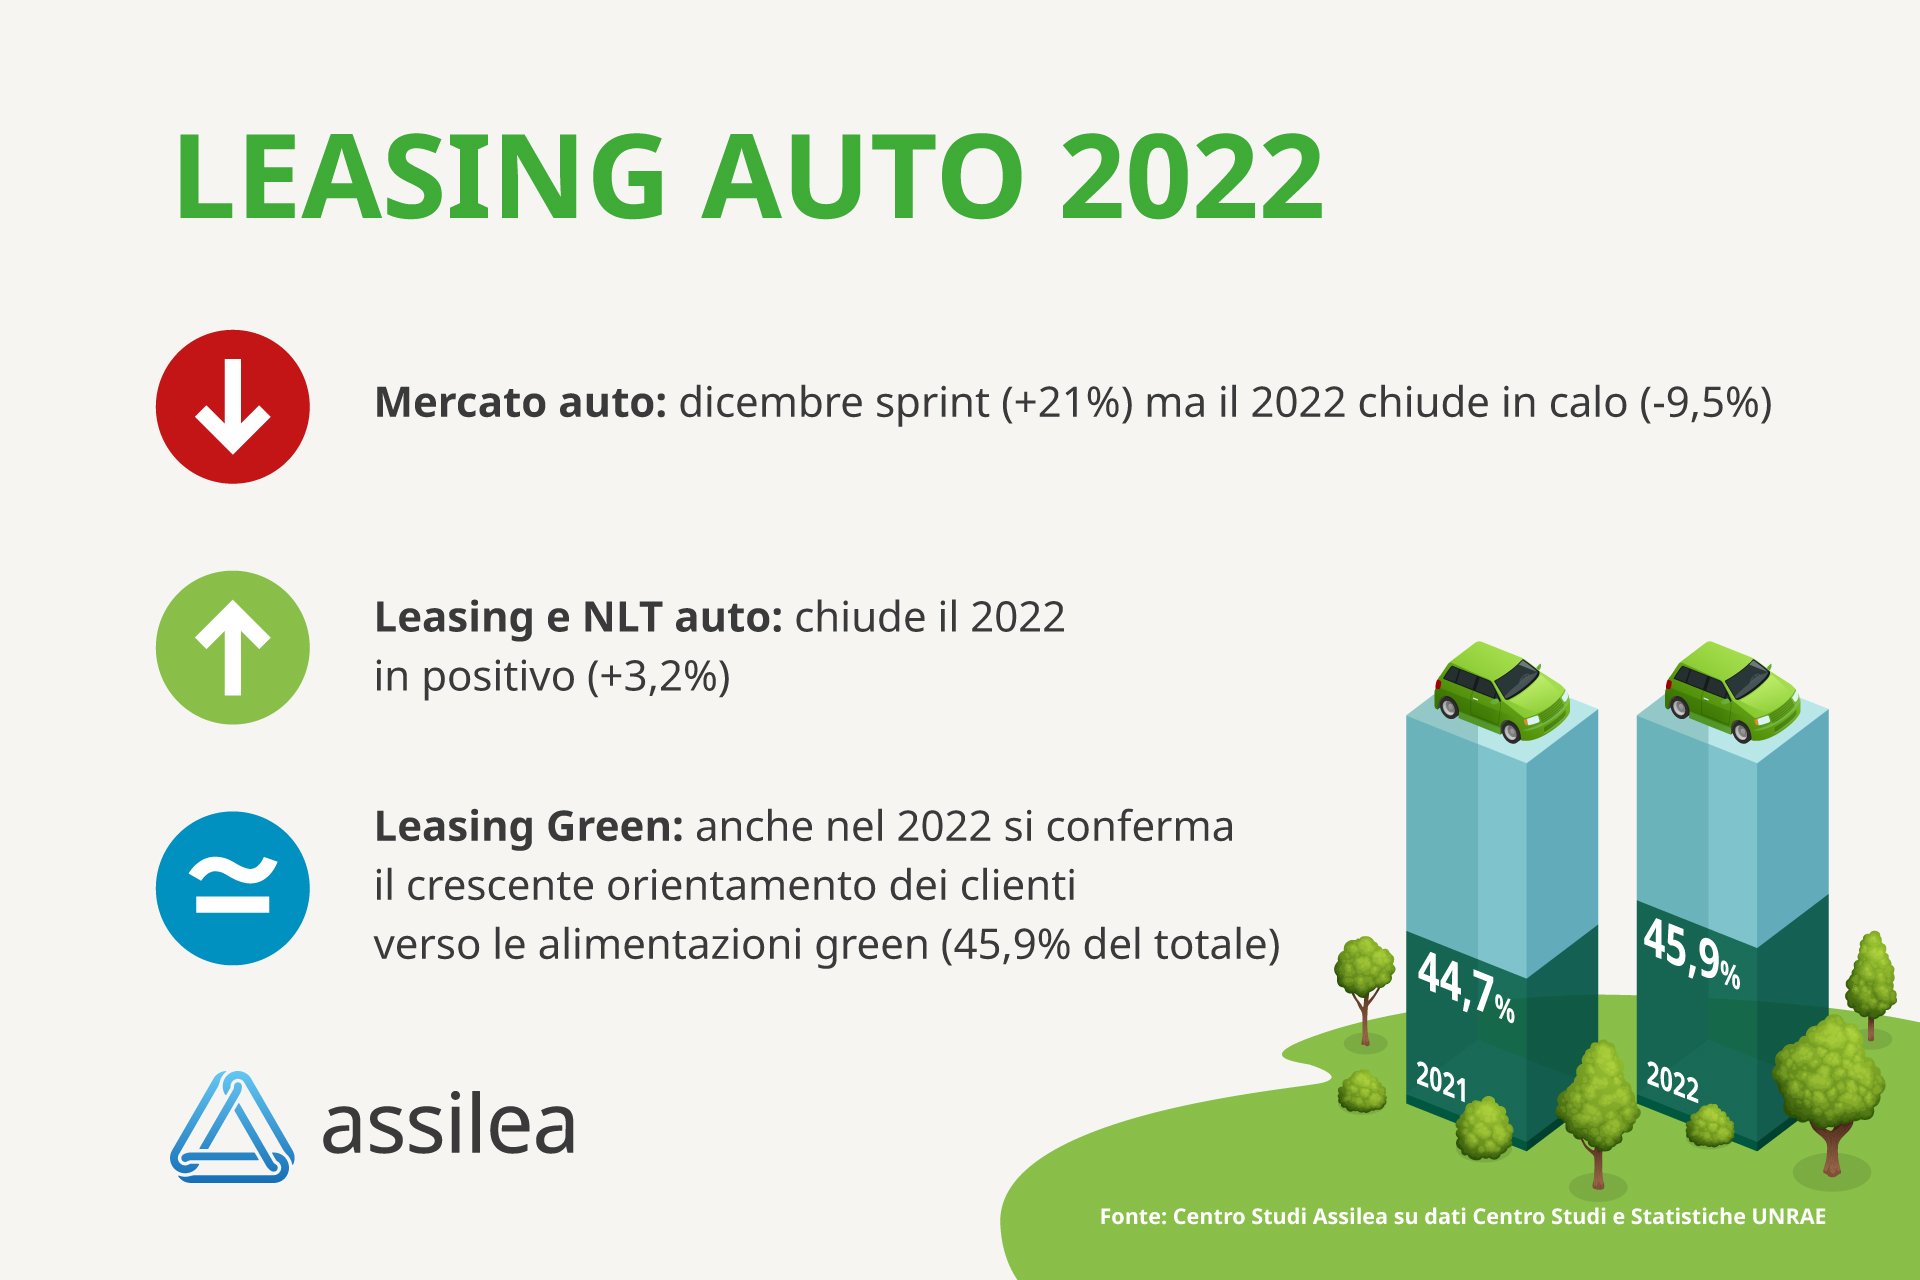 Auto, Assilea: 2022 positivo per il leasing auto (+3,2%)